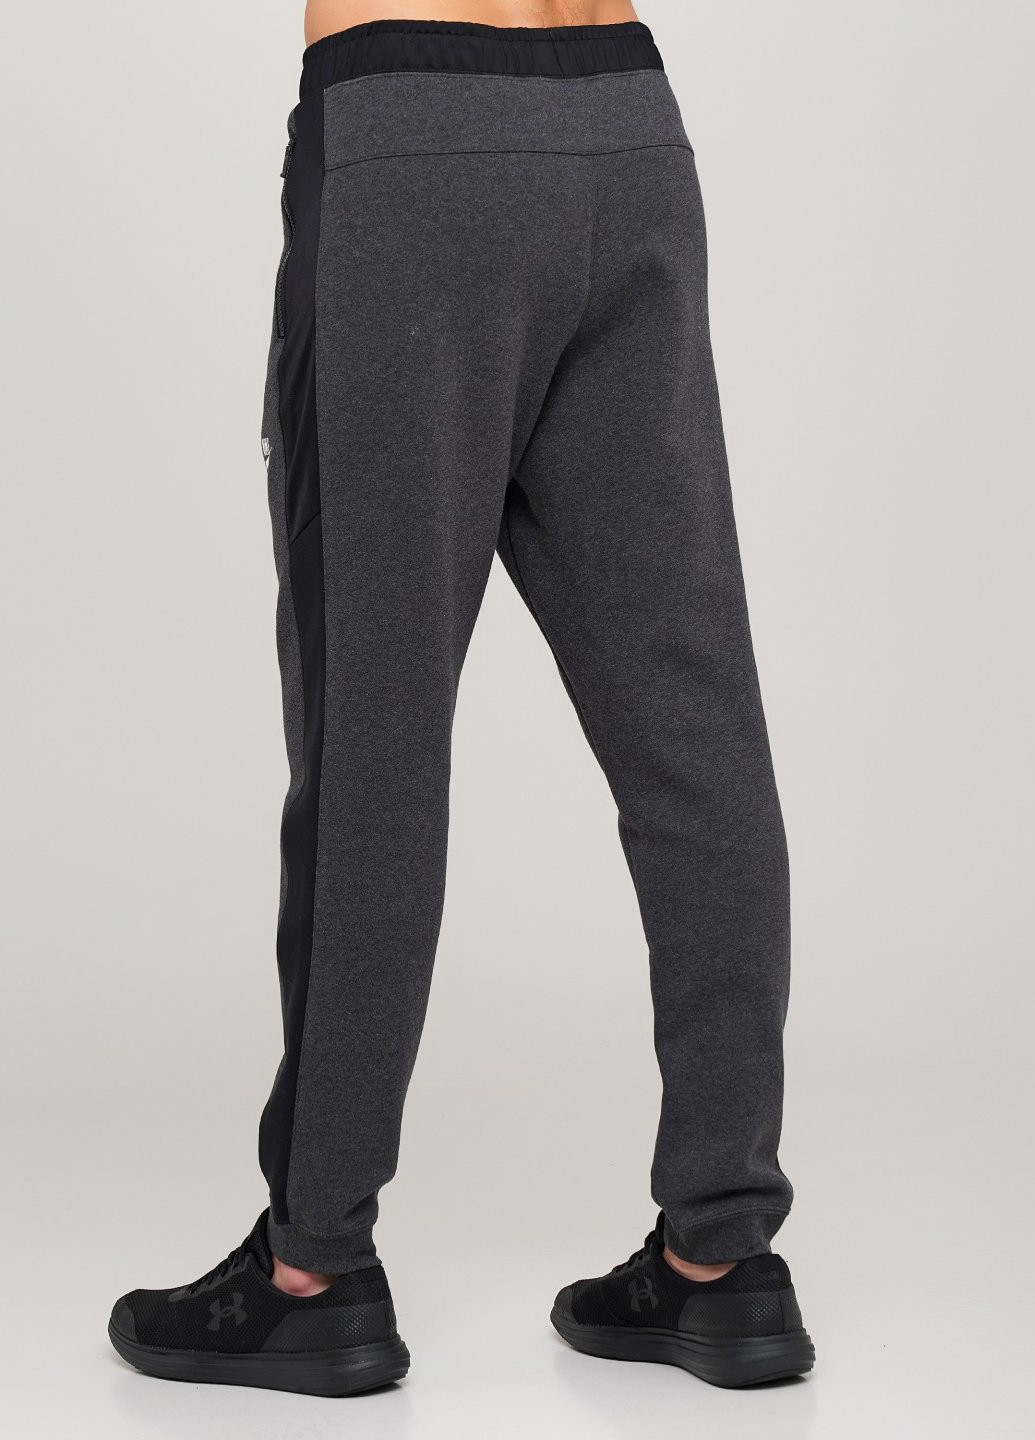 Темно-серые спортивные демисезонные джоггеры брюки Nike